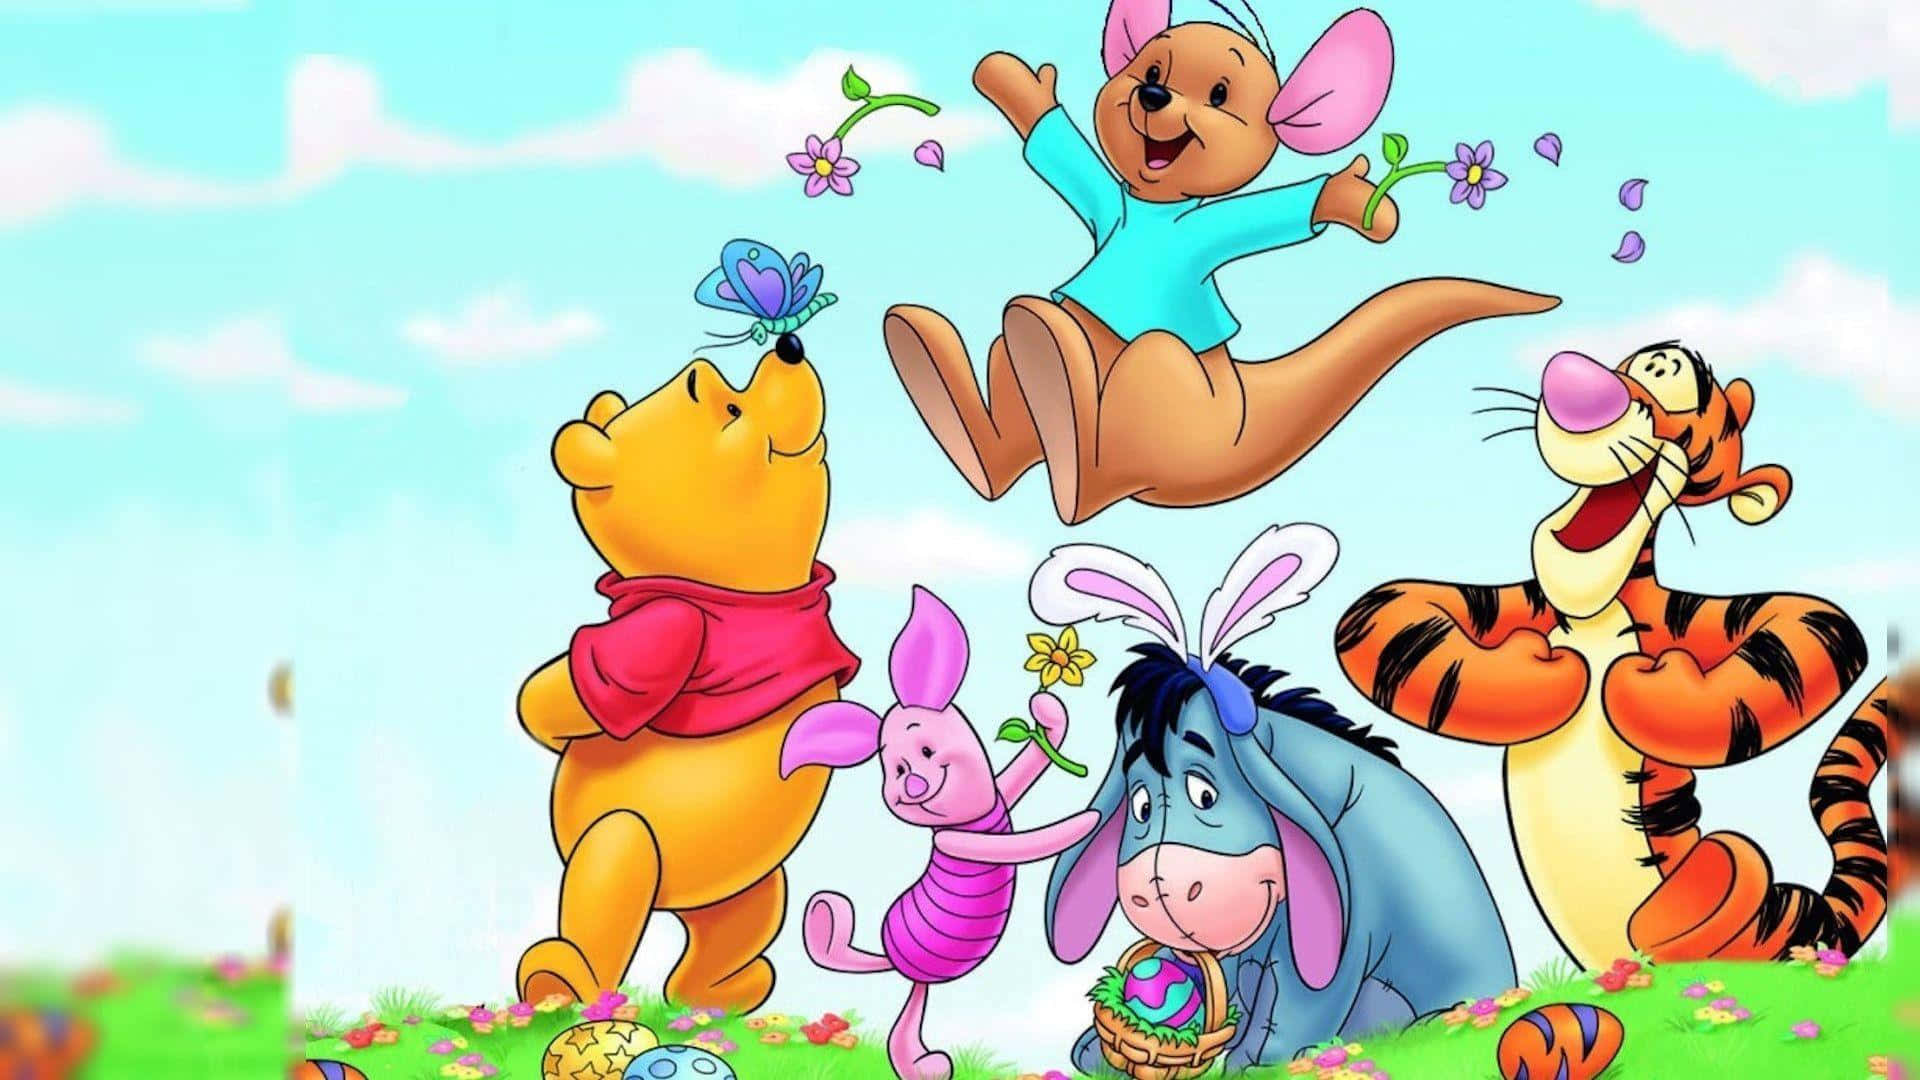 Feiernsie Nostalgie Mit Winnie The Pooh Classic Wallpaper